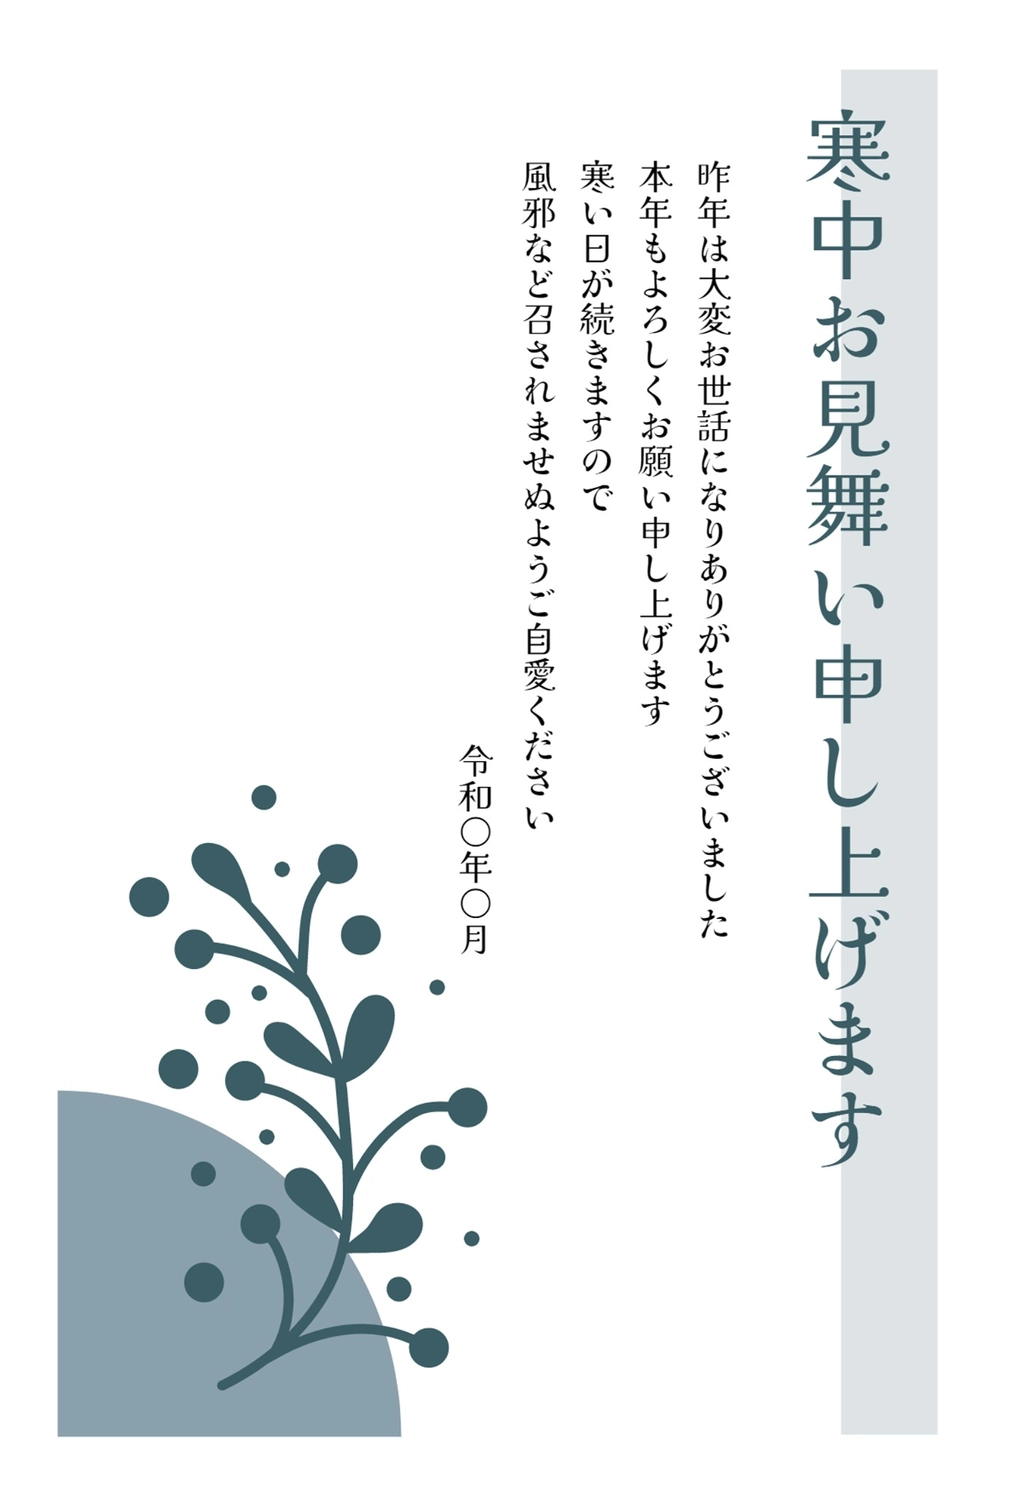 寒中見舞い　植物, January, February, greeting card, Mid-winter Greeting template